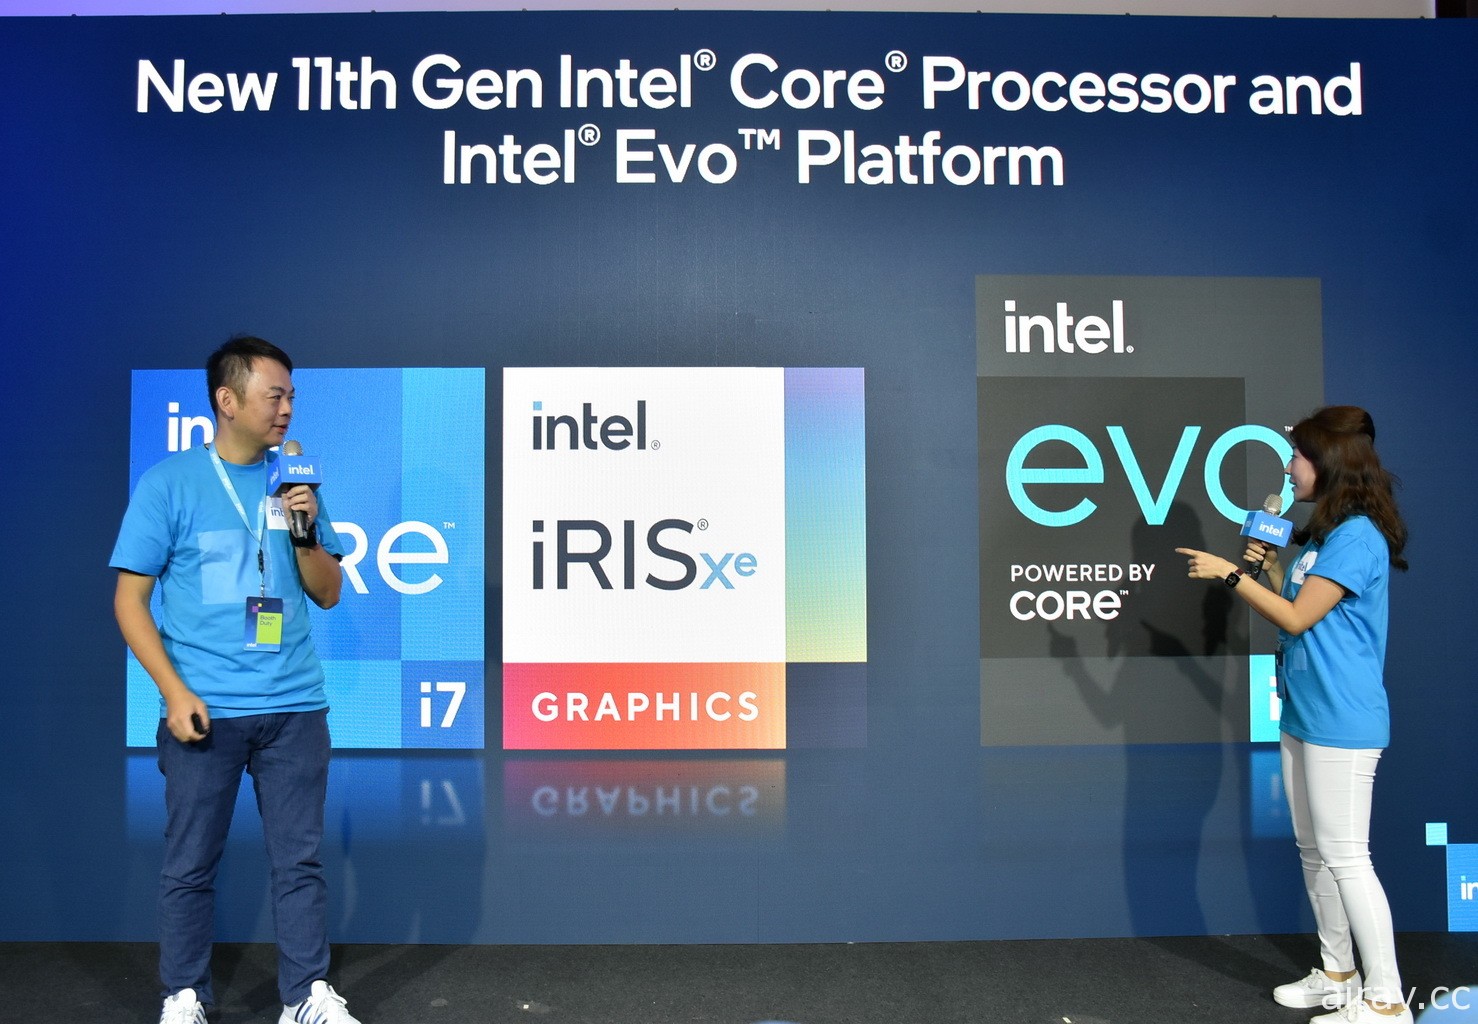 英特爾集結多款 Intel Evo 平台筆電進行展示 強調通過認證機種將讓使用者有優異體驗